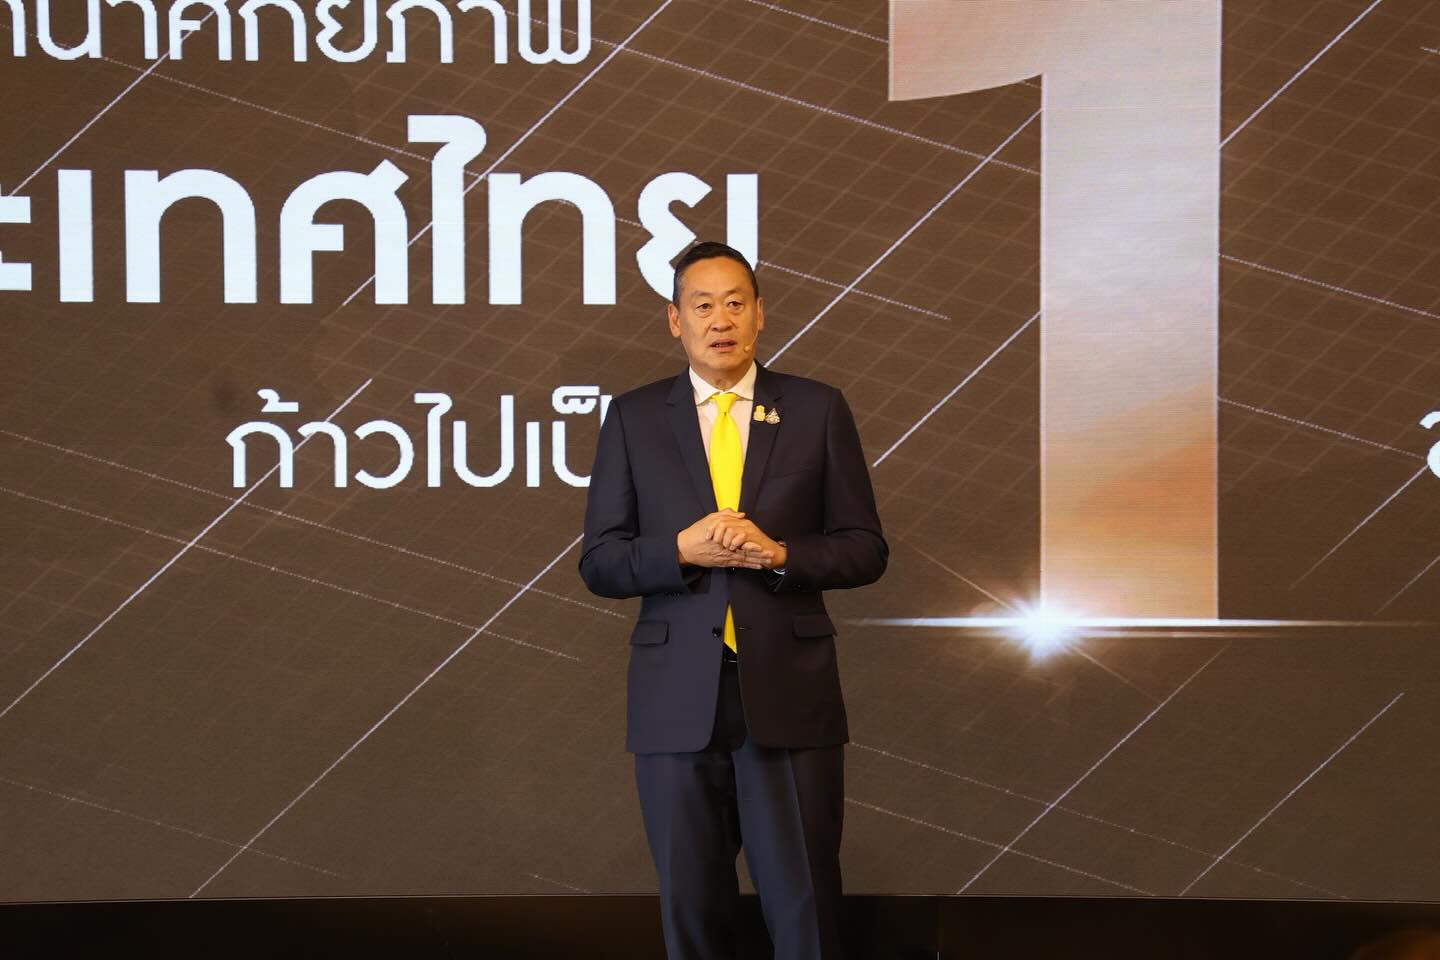 ผศอ. เข้าร่วมงานแสดงวิสัยทัศน์ “IGNITE THAILAND : จุดพลัง รวมใจ ไทยต้องเป็นหนึ่ง”